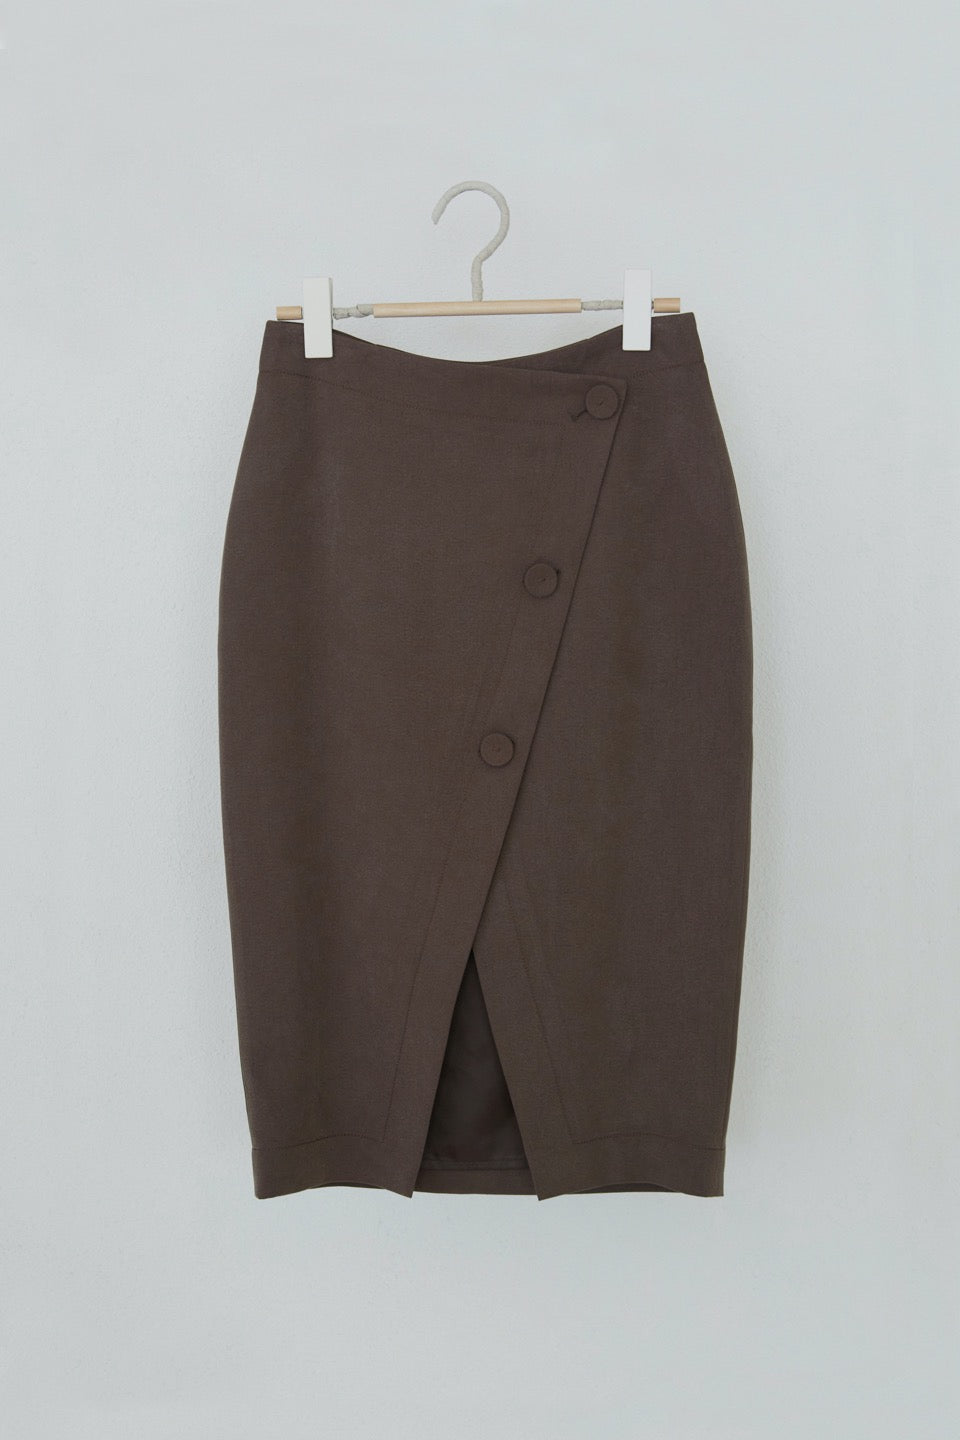 [イム・ナヨン着用] VIIIR Tencel Oxford Wrap Skirt